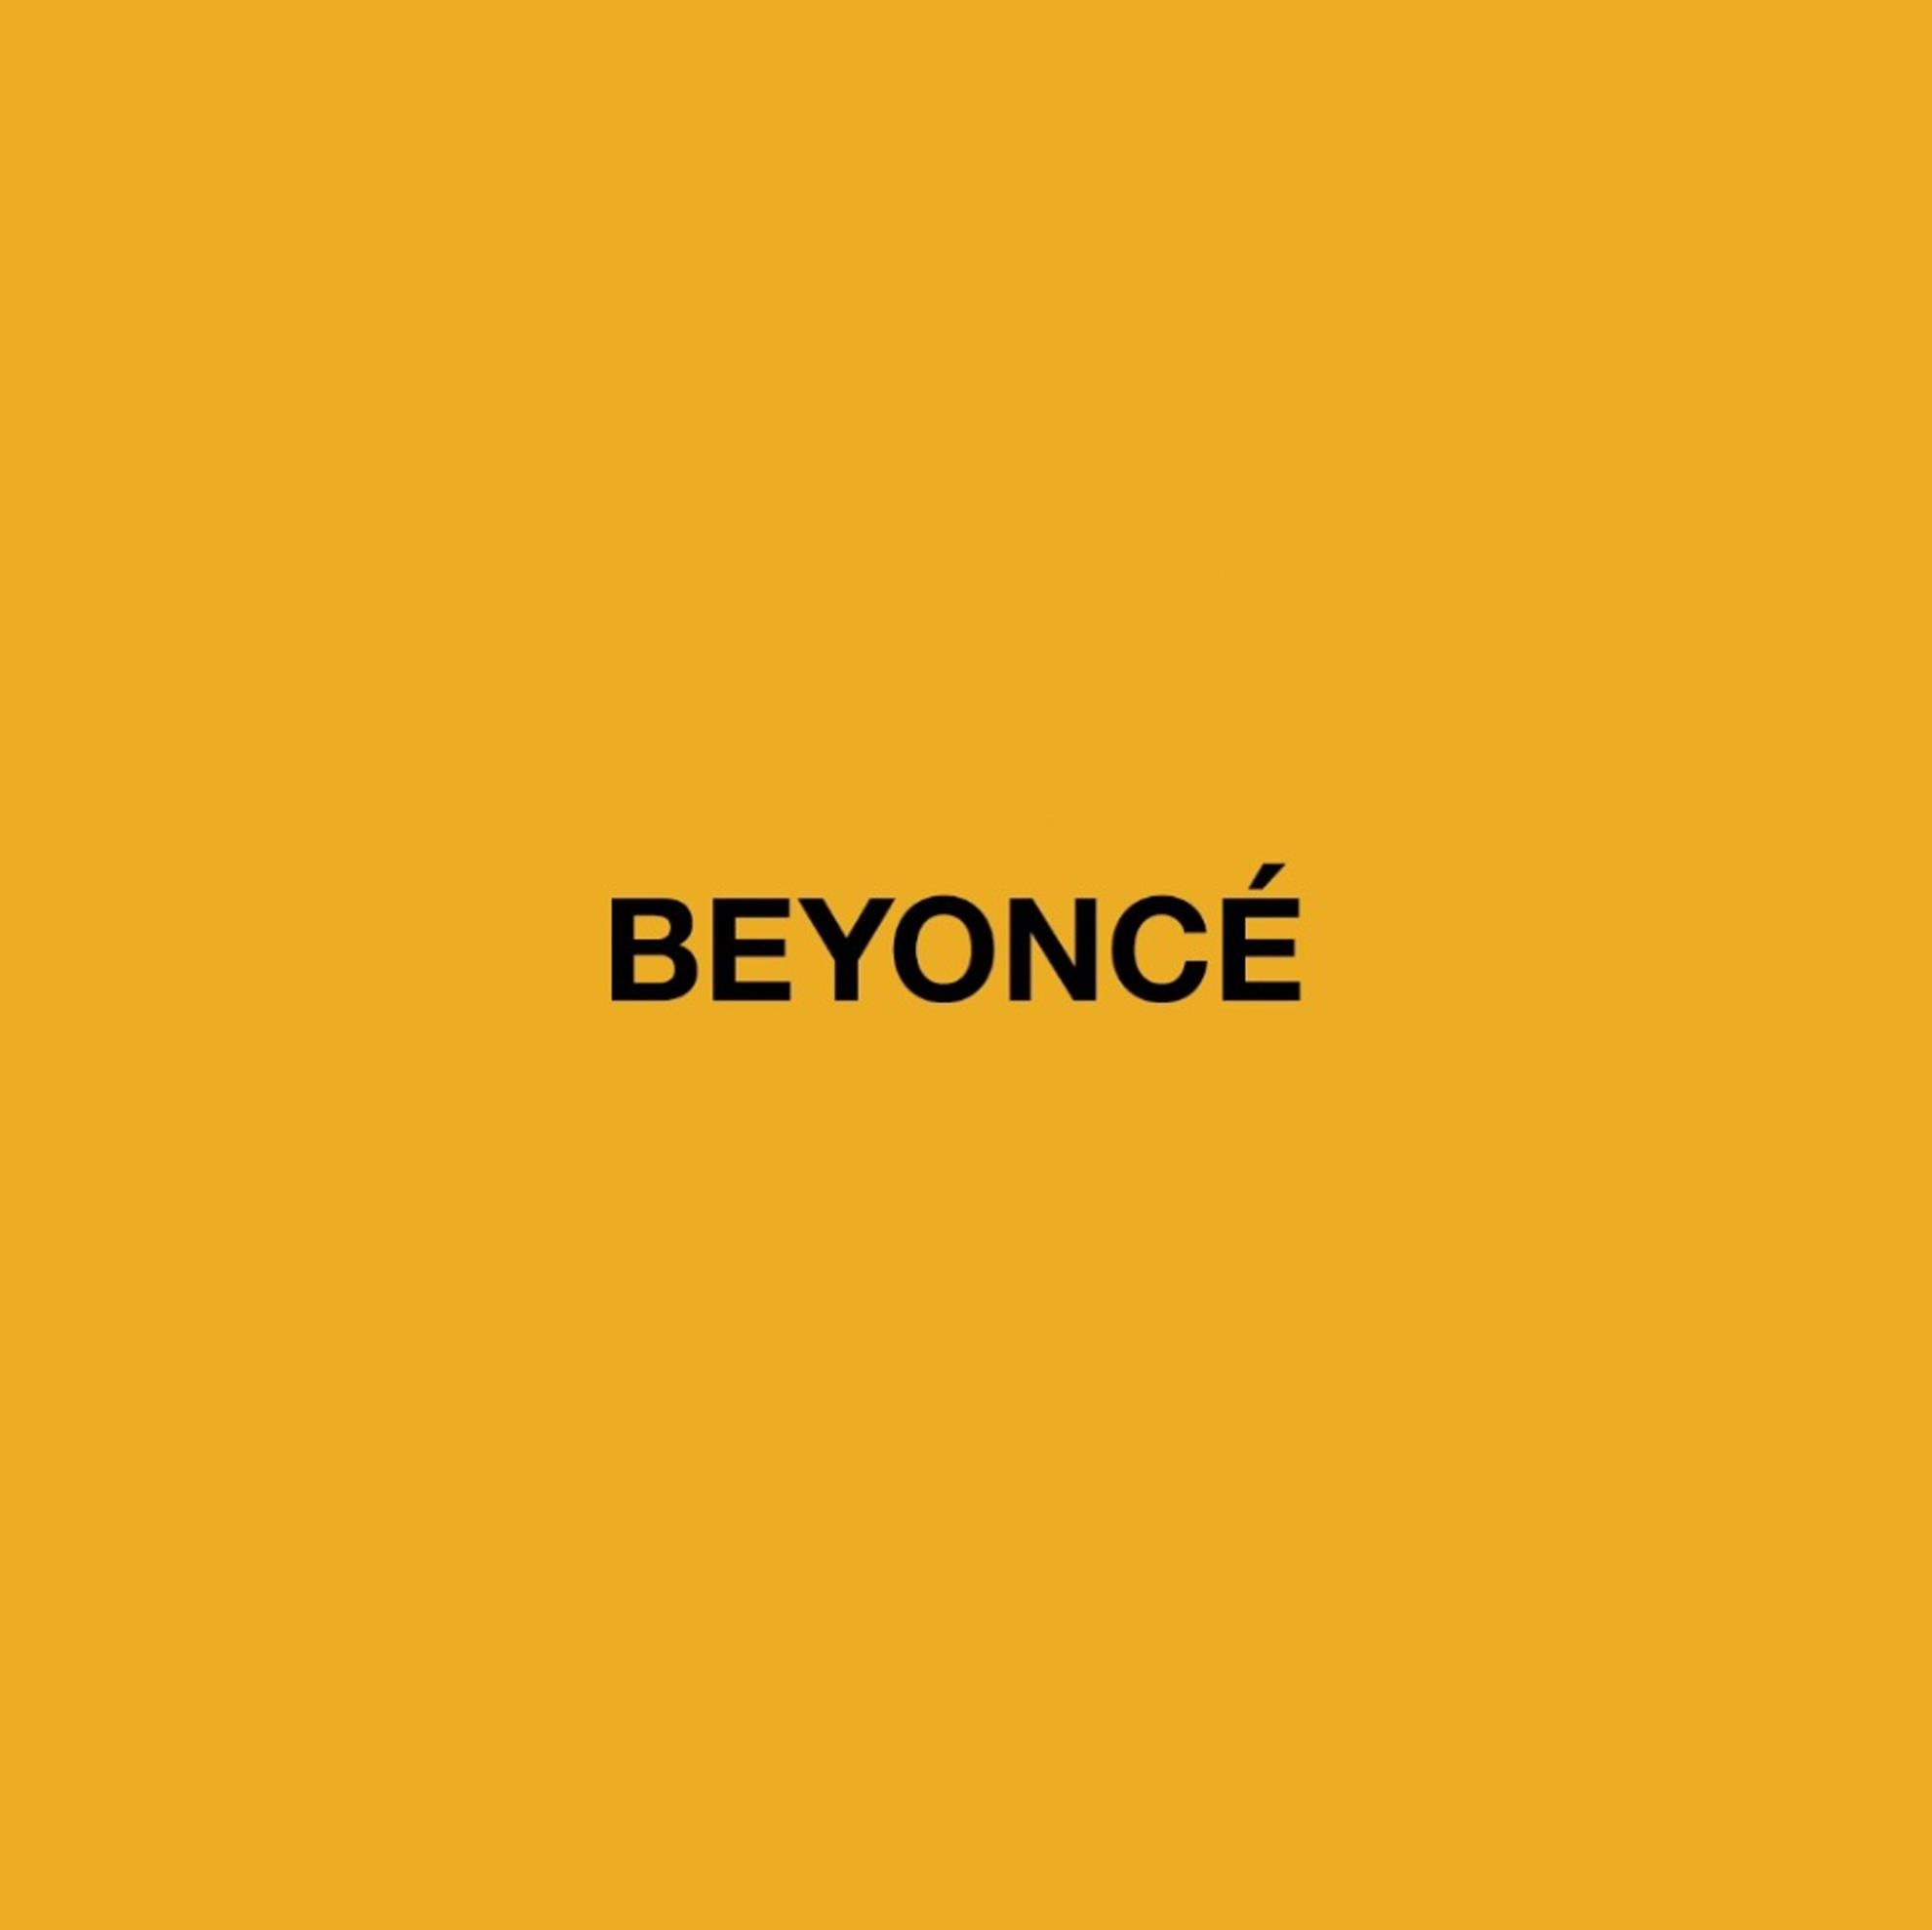 adidas Originals y Beyoncé anuncian su unión